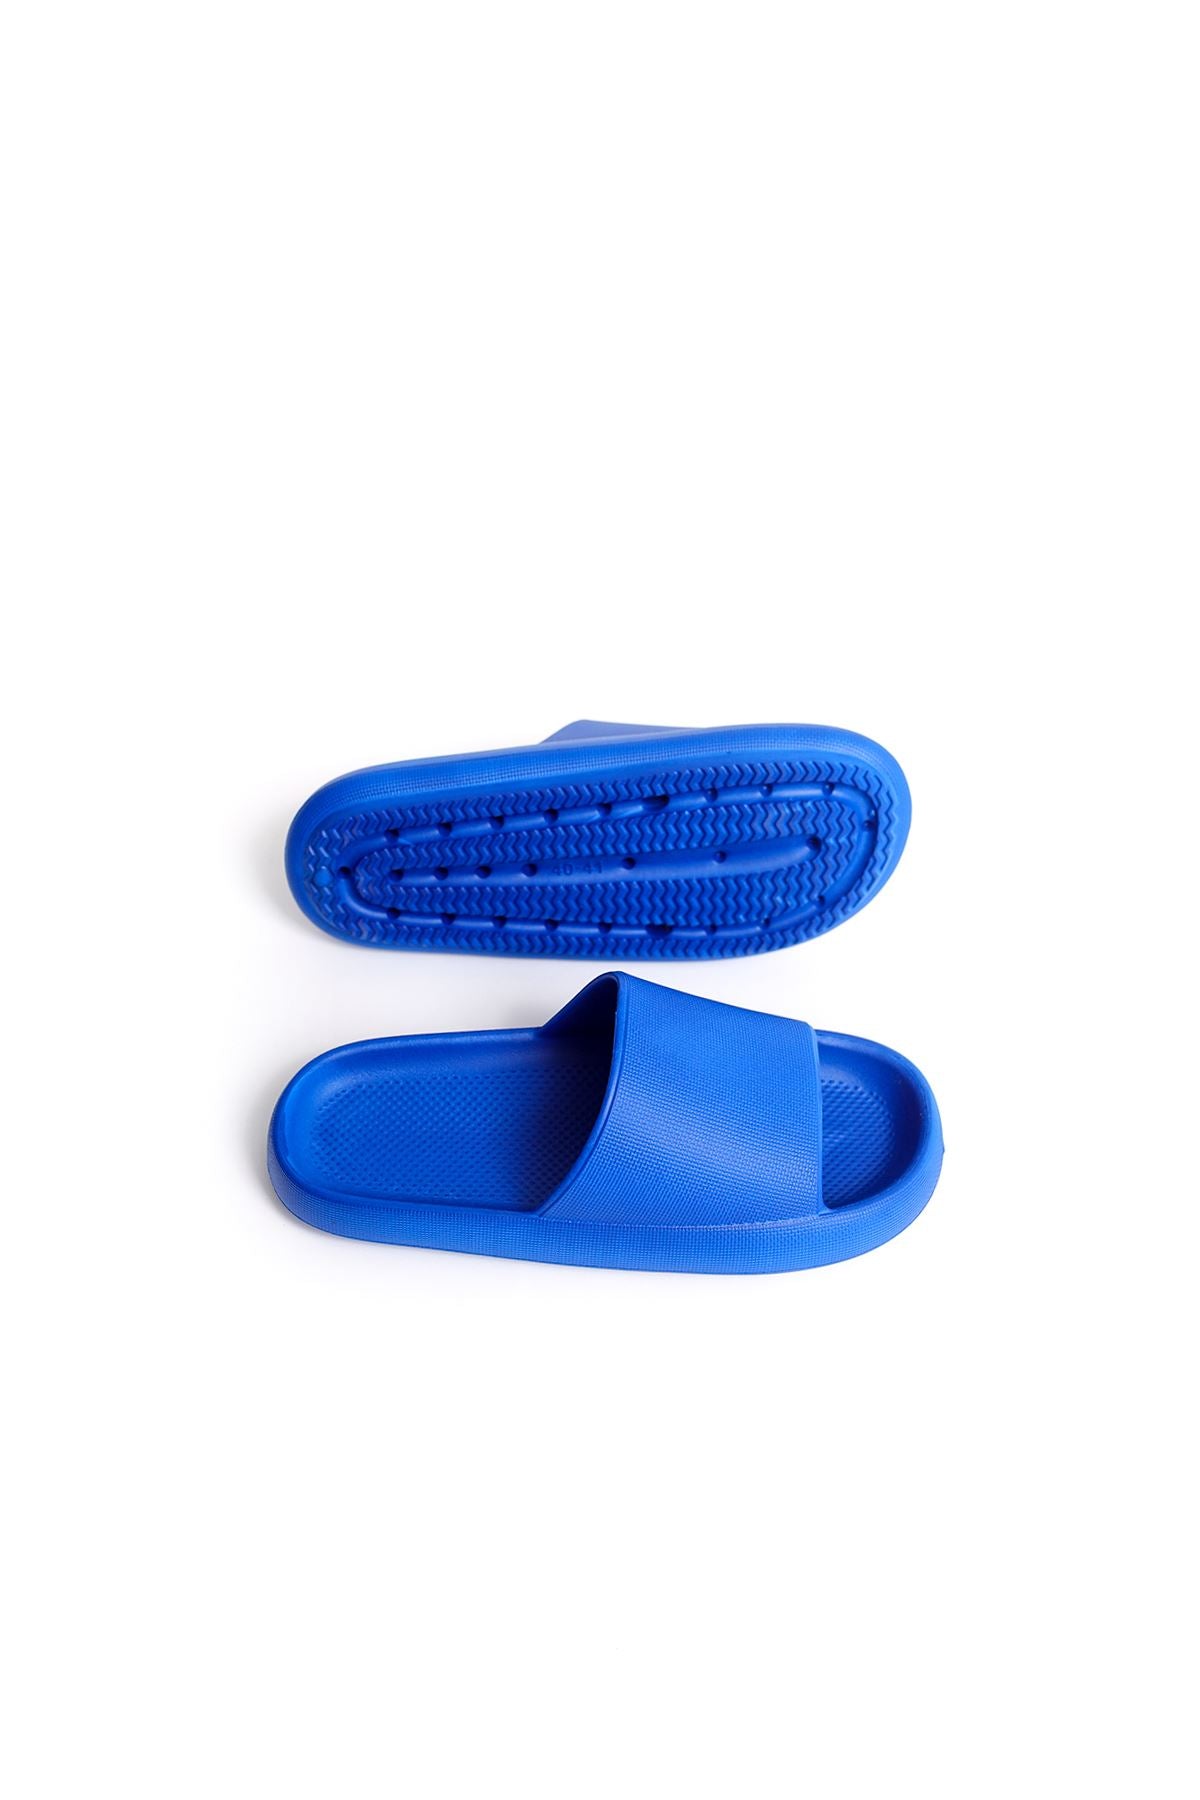 STM Design Polyurethane Men's Slippers BLUE - STREETMODE ™